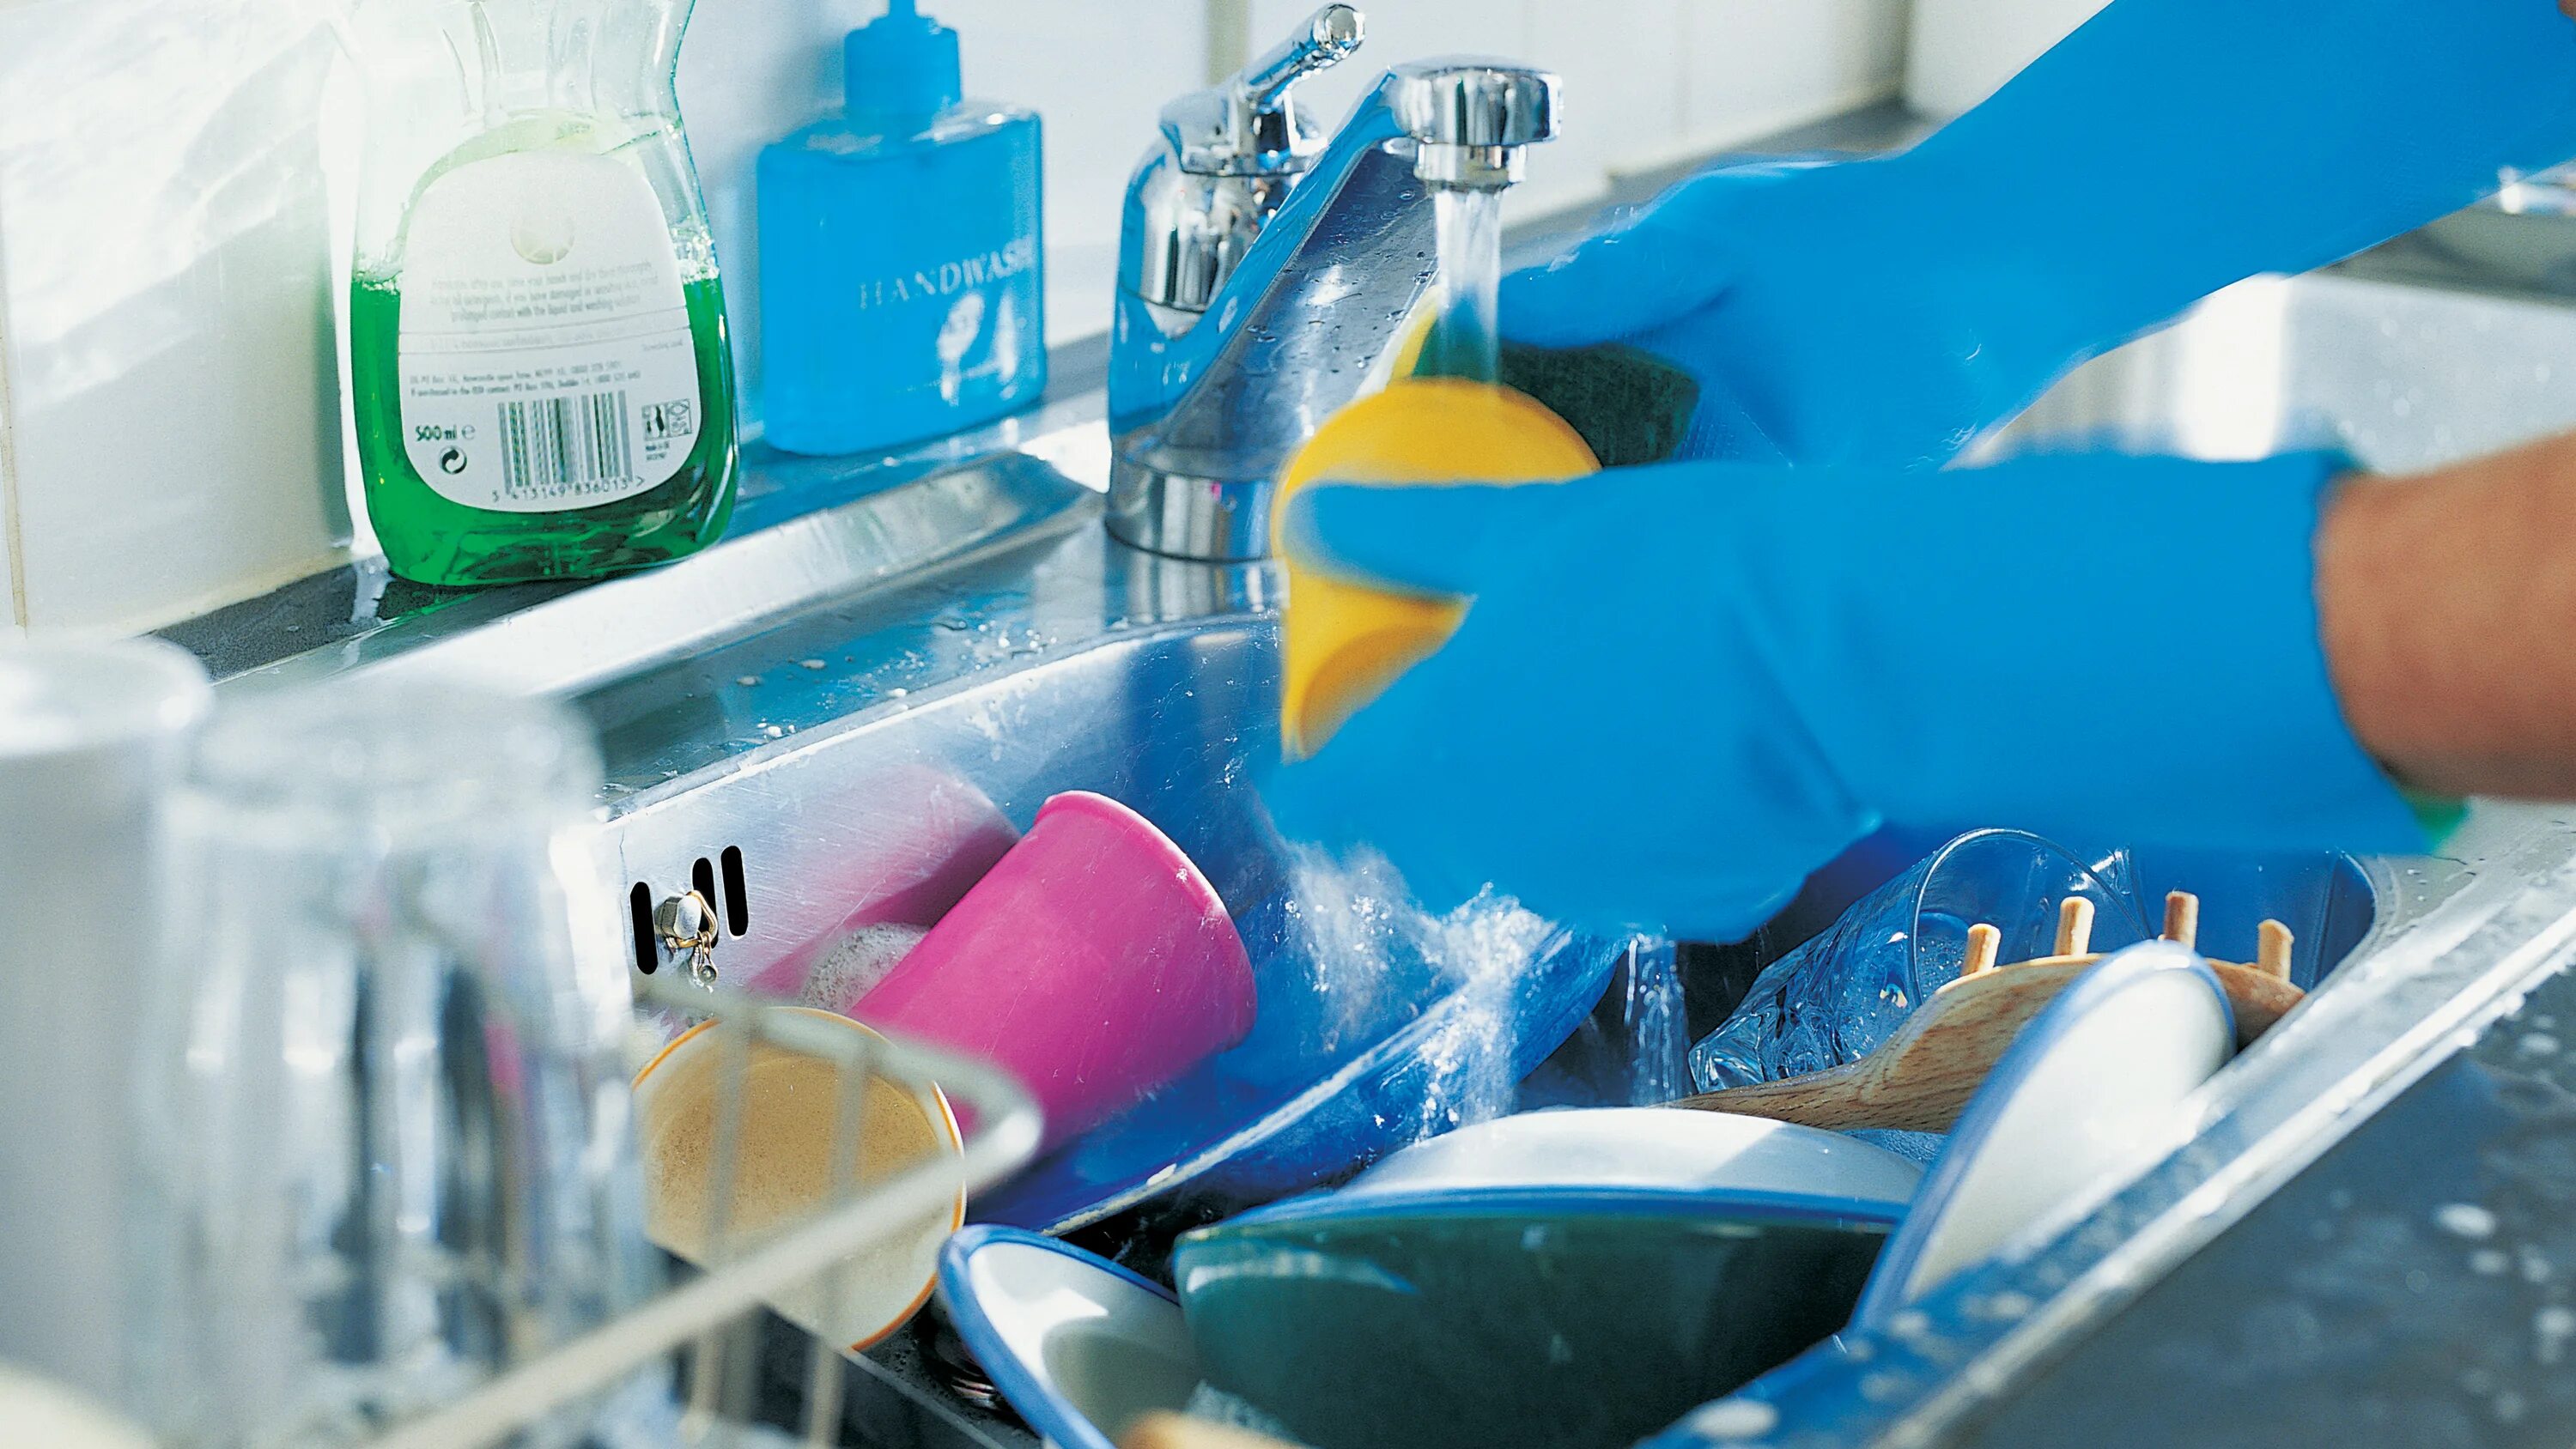 Мытье посуды. Мойка посуды. Мыть посуду картинка. Washing dishes. He to wash dishes